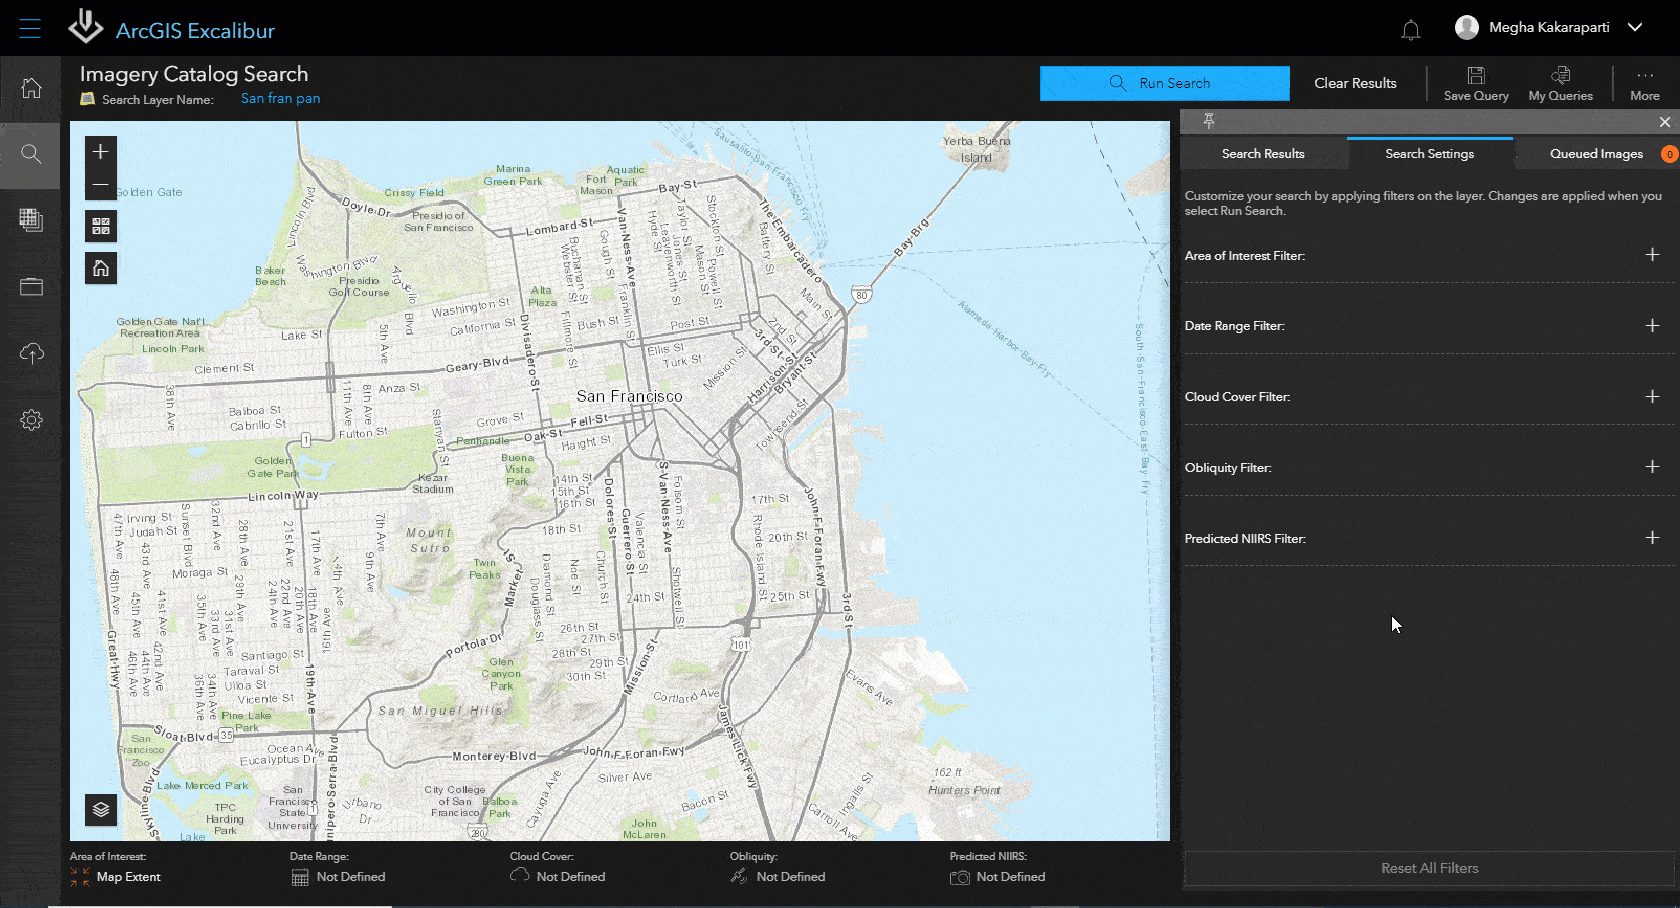 خريطة رقمية لسان فرانسيسكو بها خطوط حمراء في مربع تمثل البحث عن الصور المتوفرة في ArcGIS Excalibur 